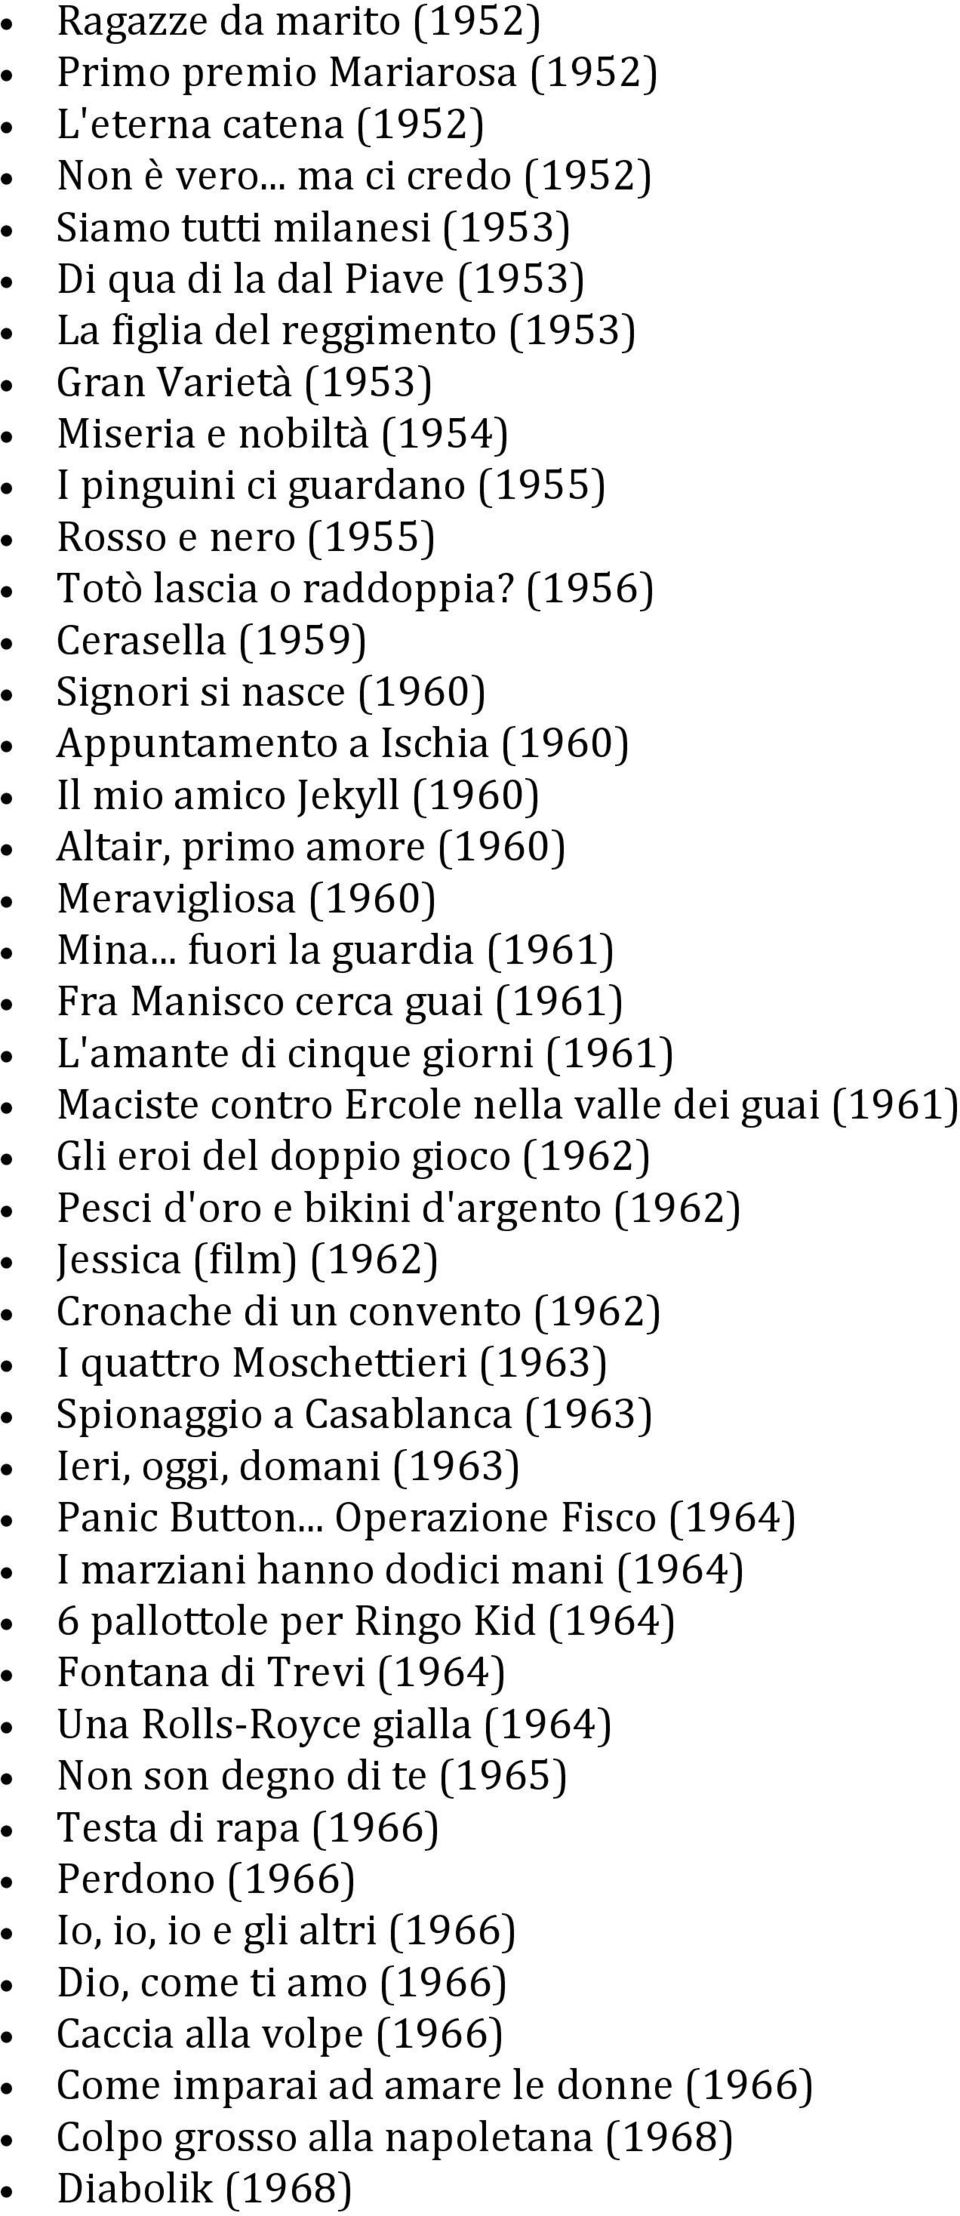 (1955) Totò lascia o raddoppia? (1956) Cerasella (1959) Signori si nasce (1960) Appuntamento a Ischia (1960) Il mio amico Jekyll (1960) Altair, primo amore (1960) Meravigliosa (1960) Mina.